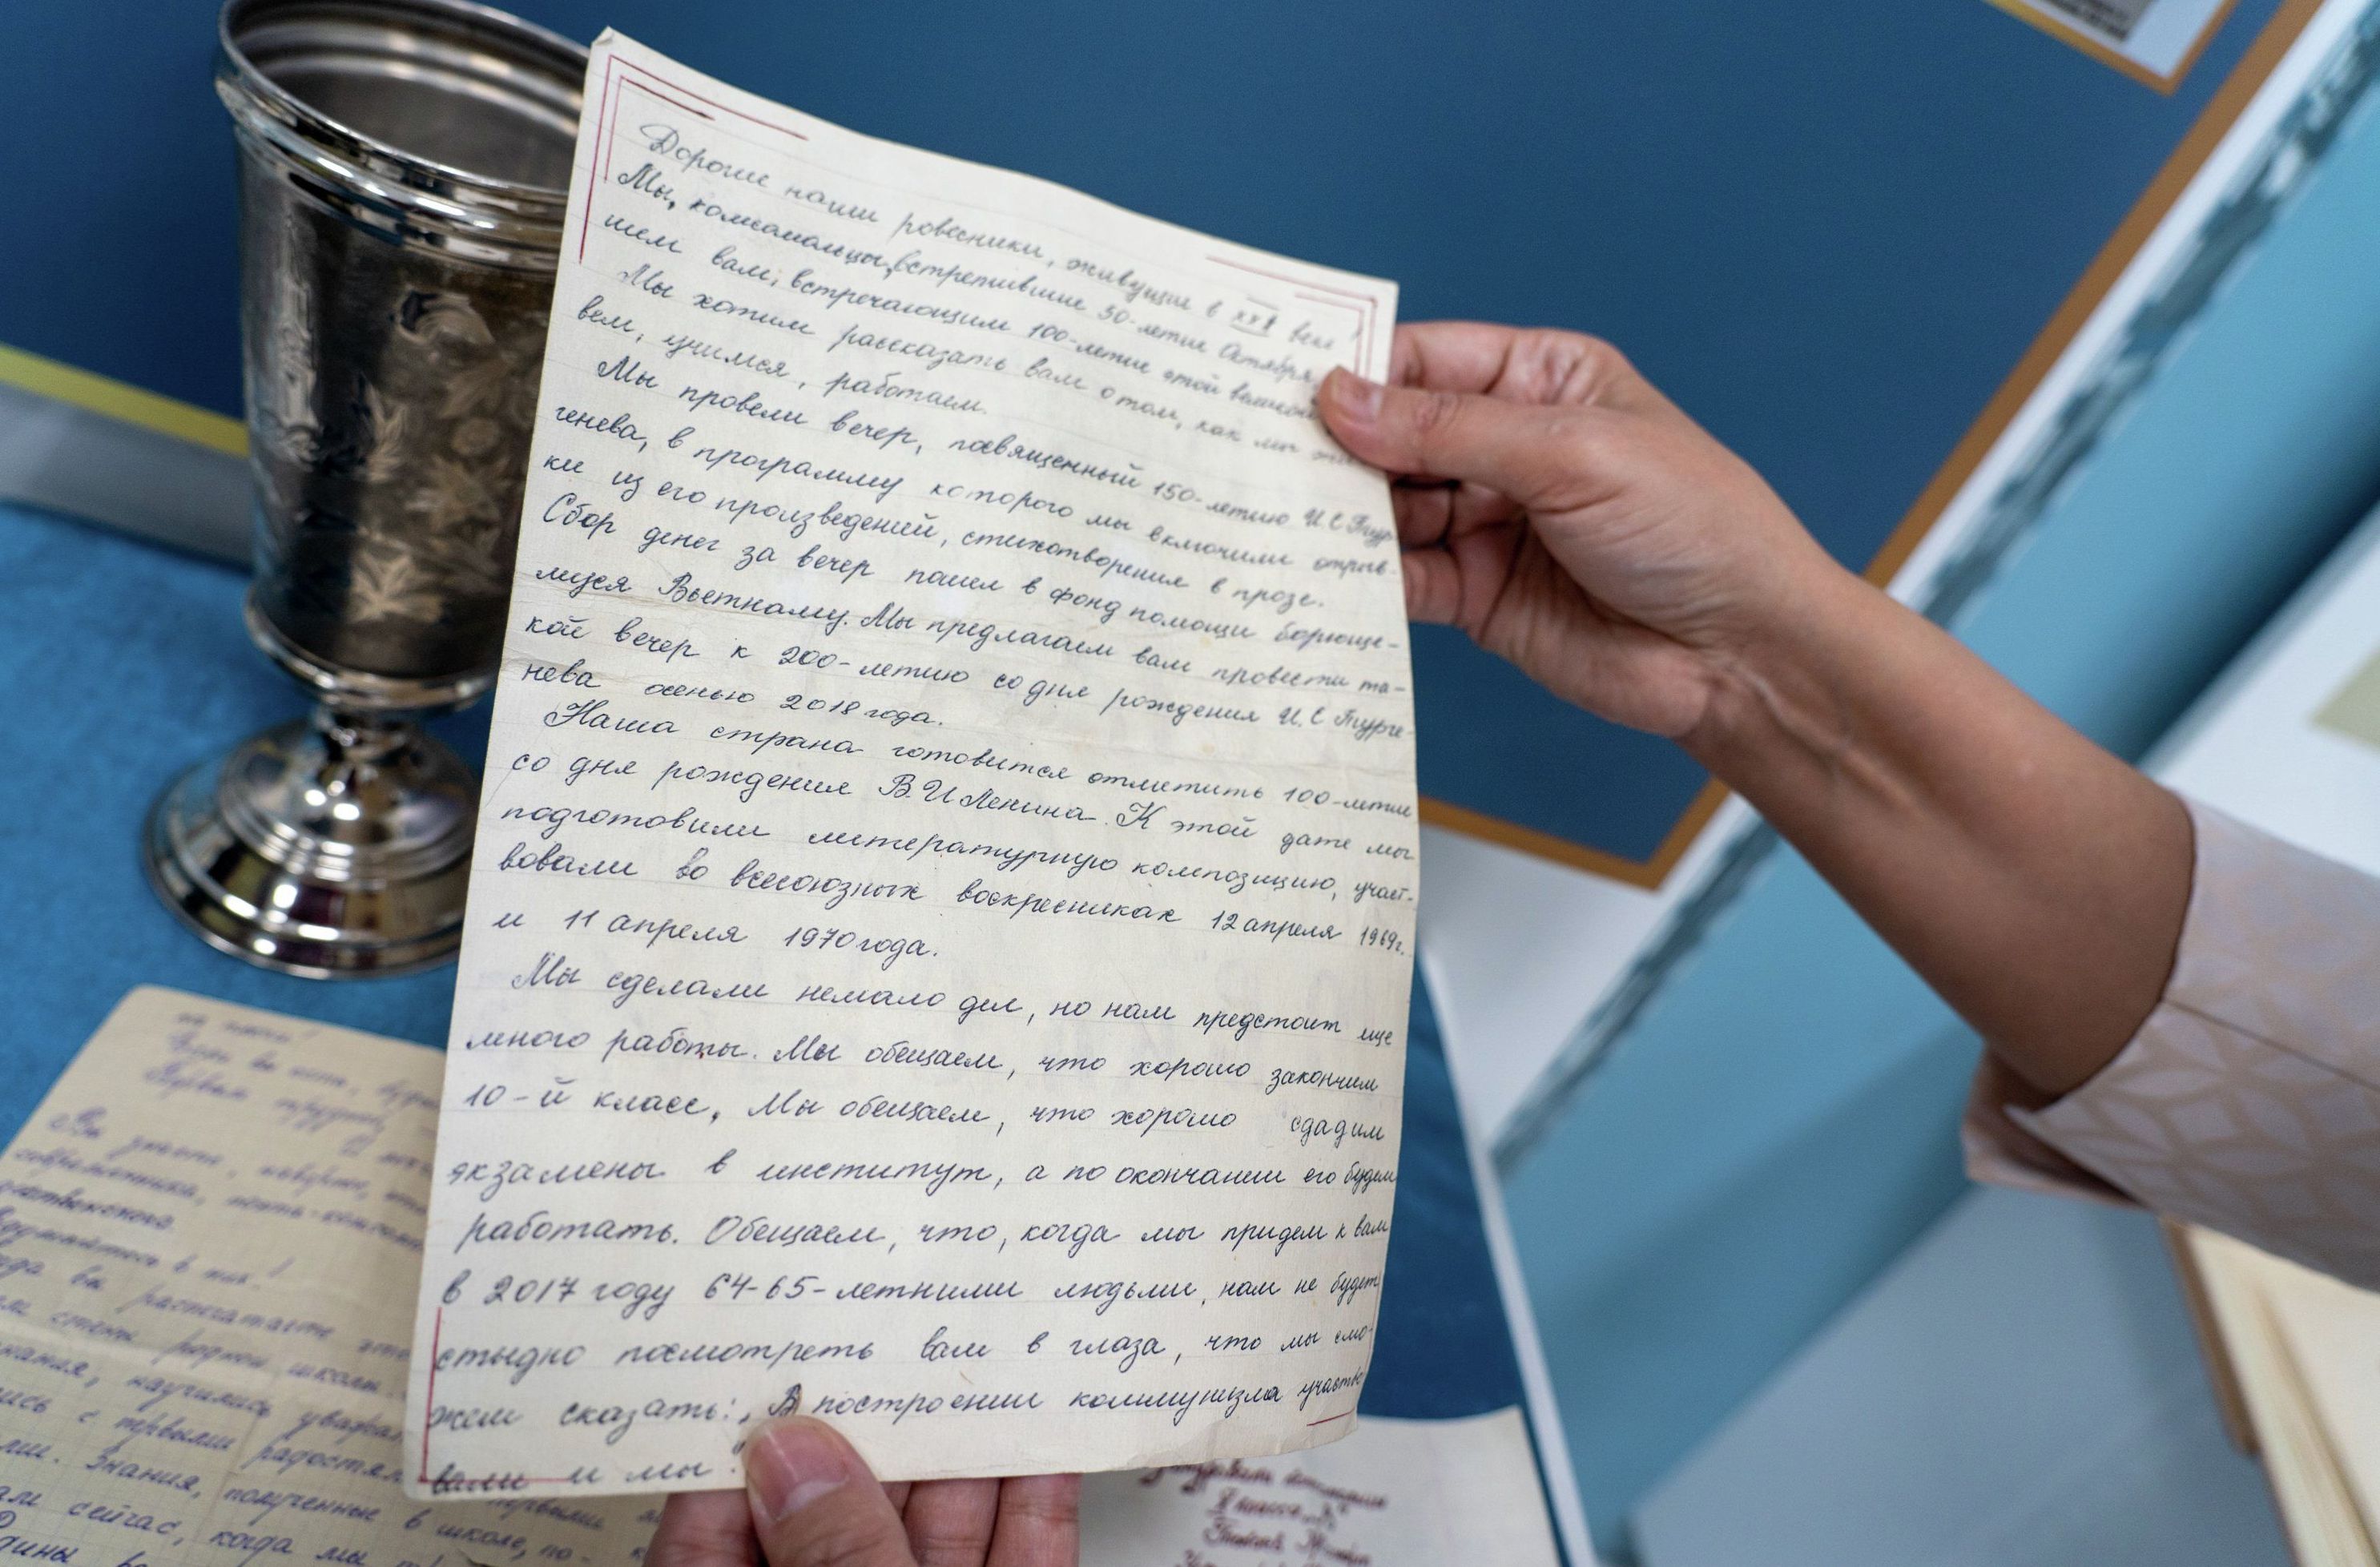 Текст письма составил Токаев, но писал не он